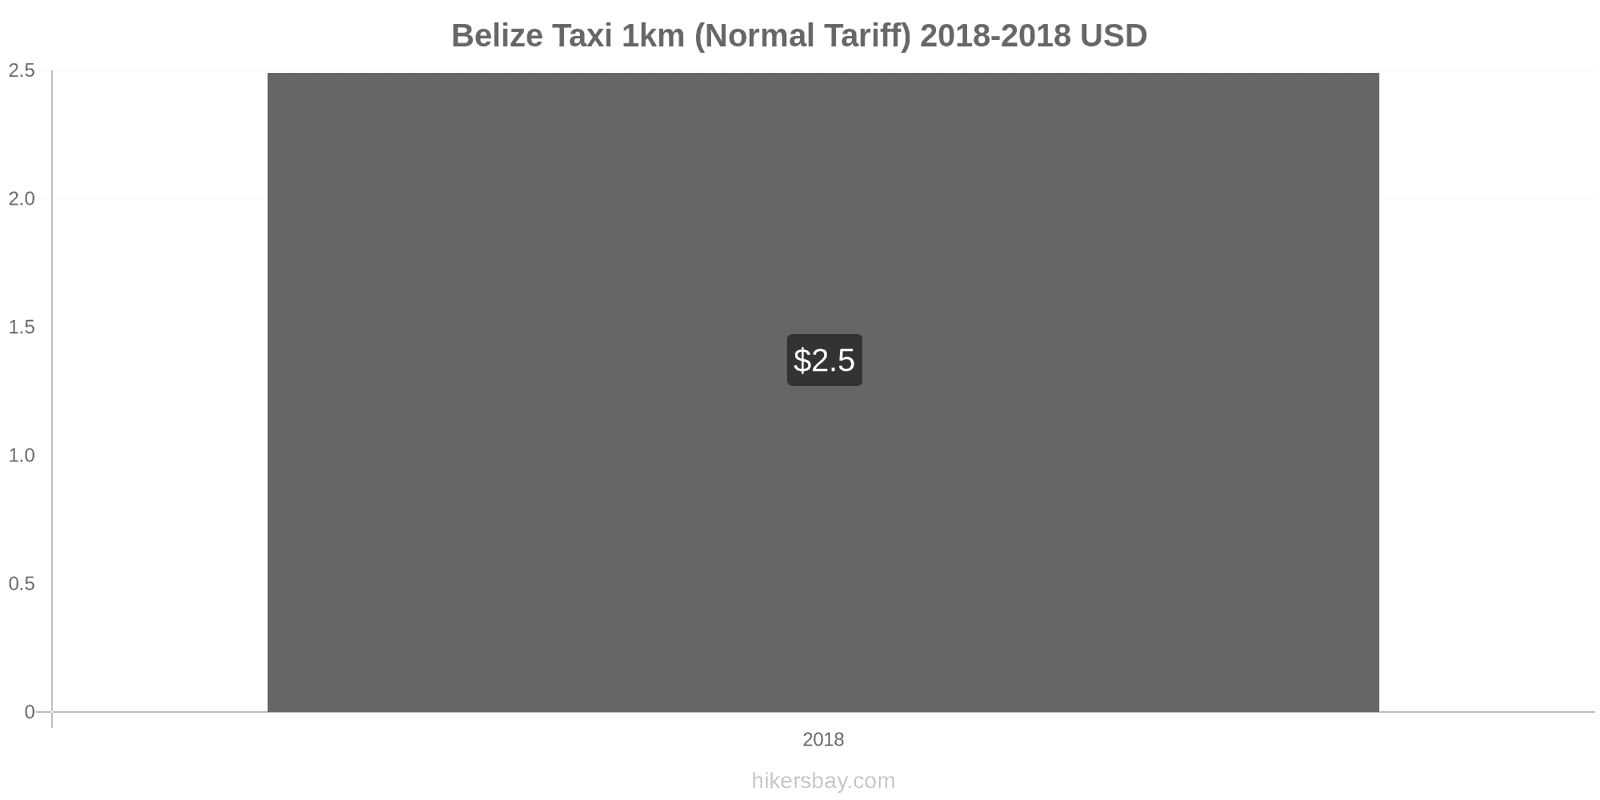 Belize price changes Taxi 1km (Normal Tariff) hikersbay.com